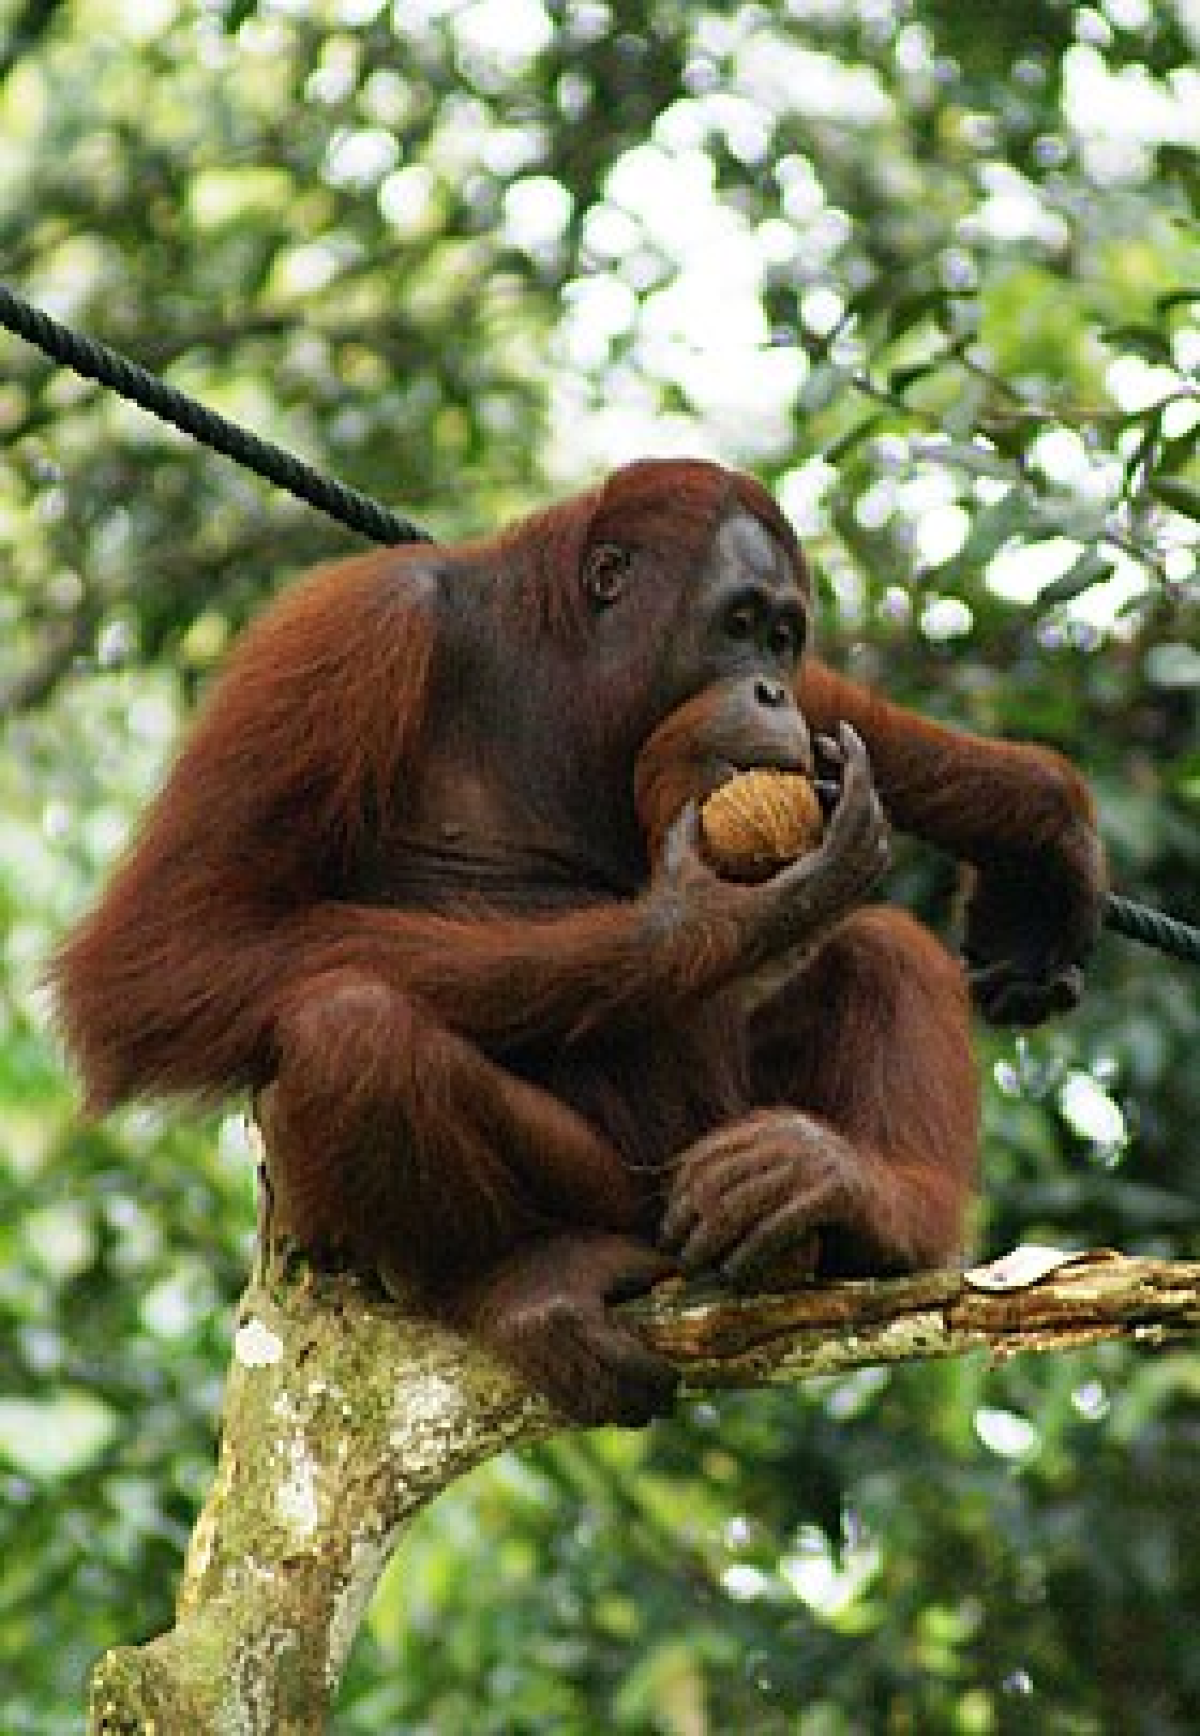 Os orangotangos têm um corpo grande e volumoso, um pescoço grosso, braços muito longos e fortes, pernas curtas e arqueadas e sem cauda.